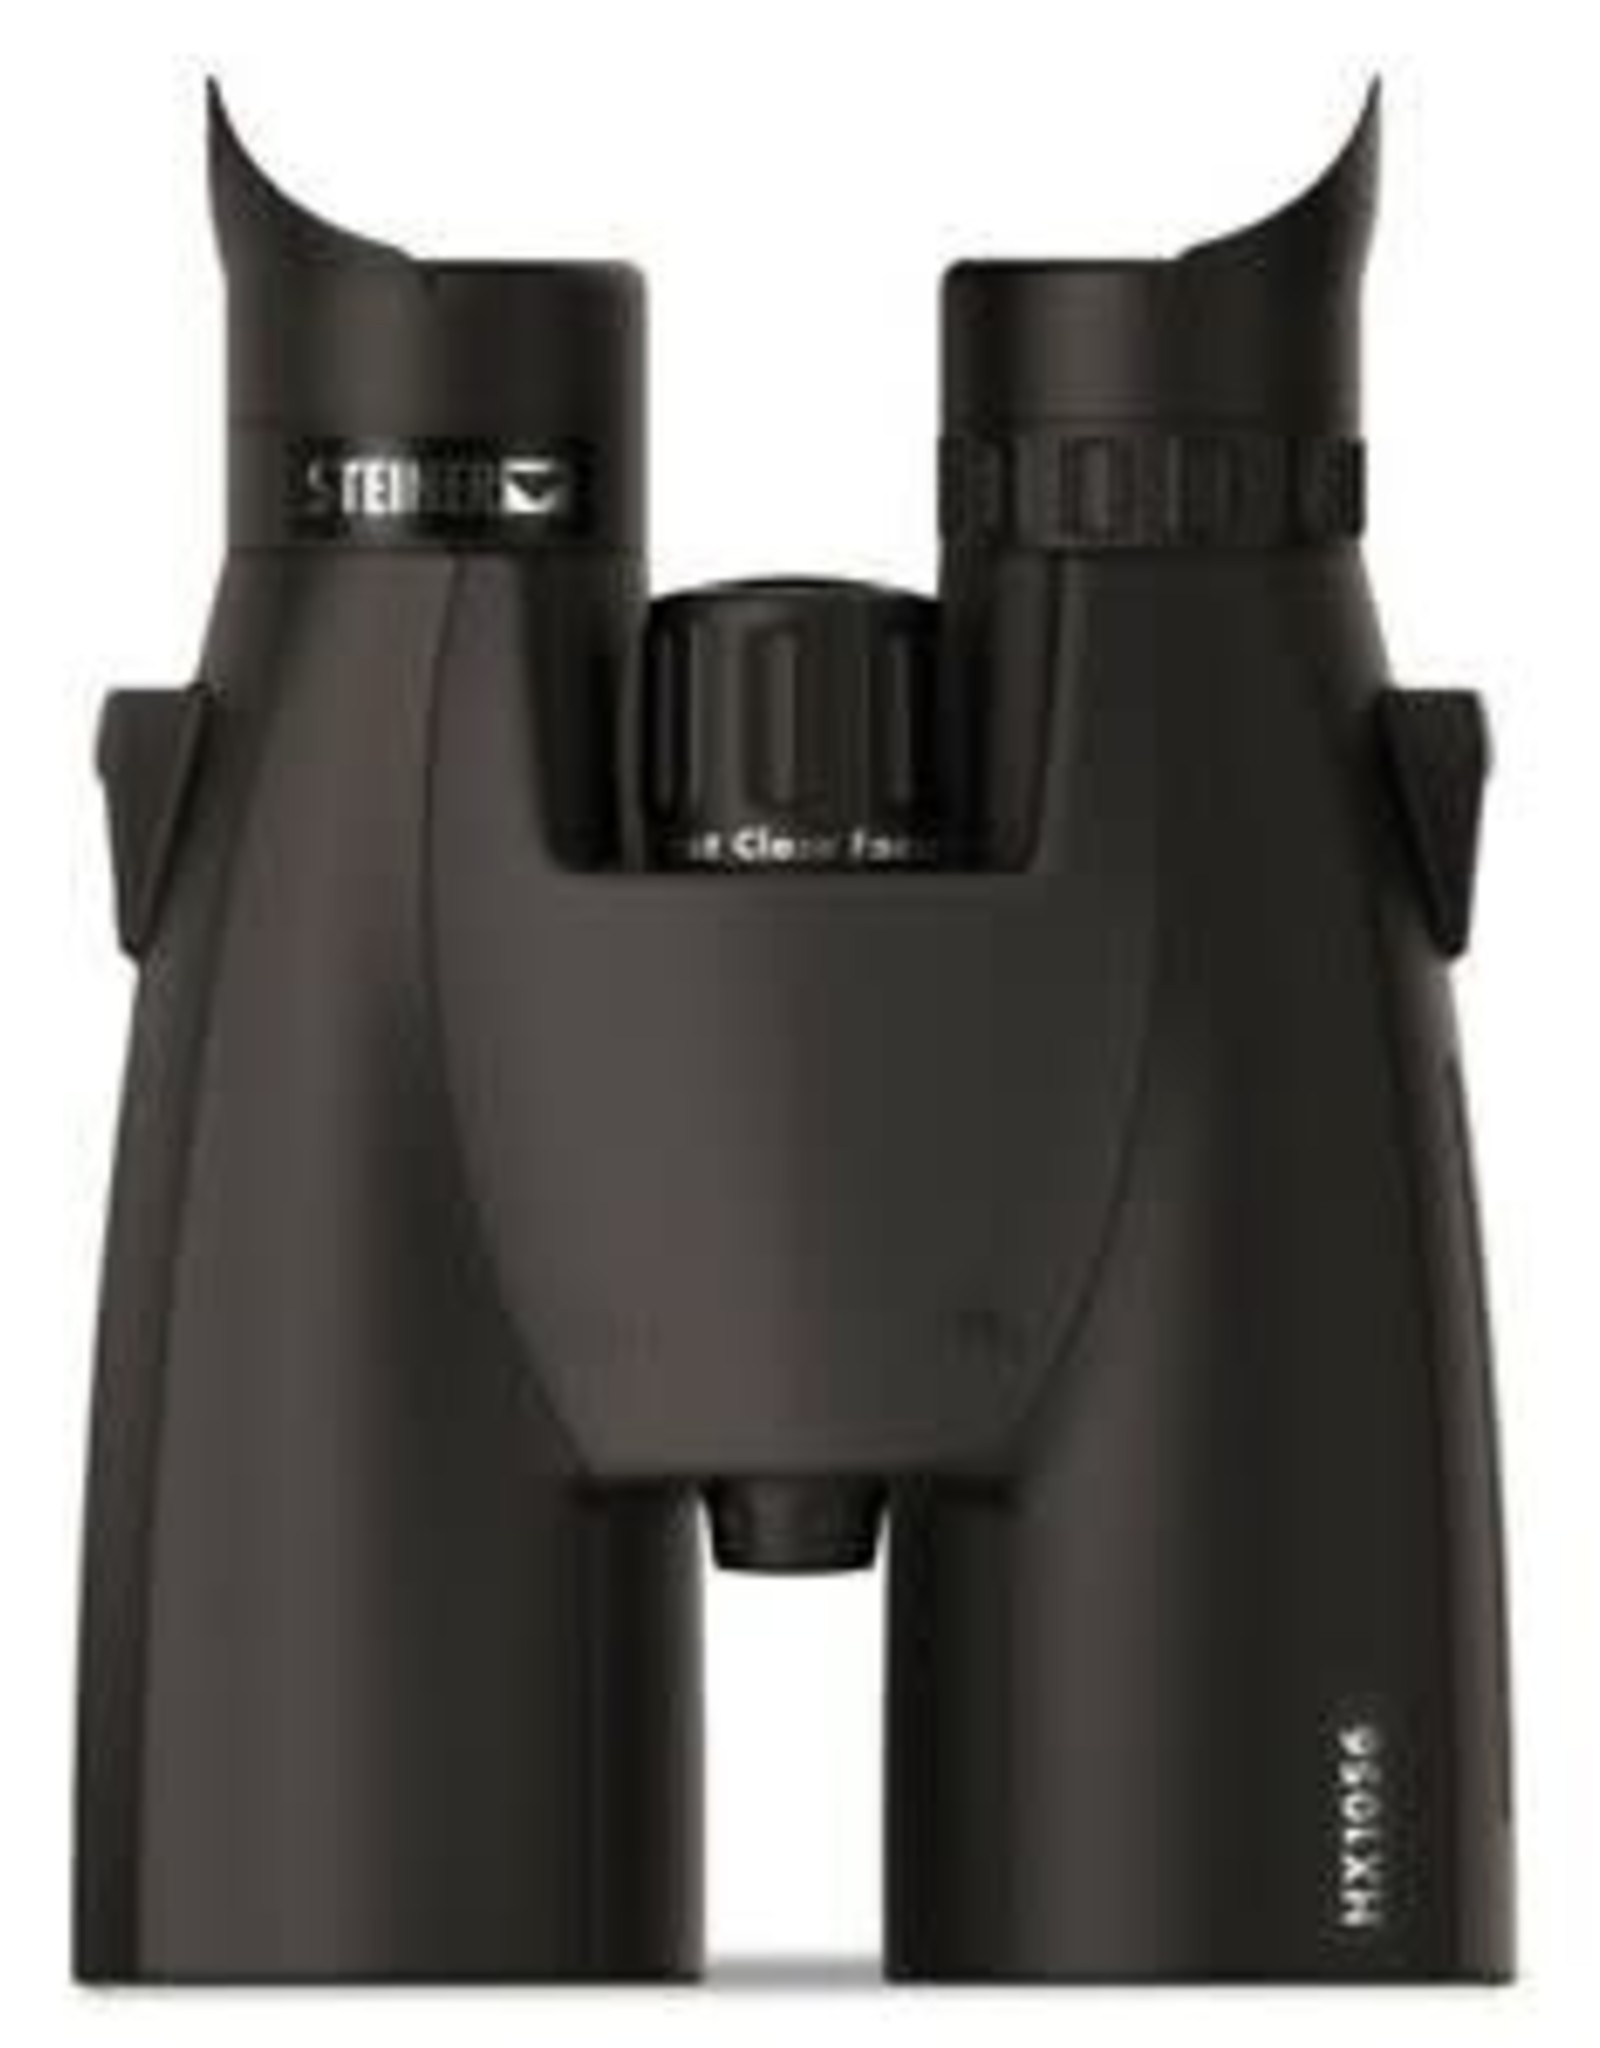 Steiner HX 10 X 56 Binoculars